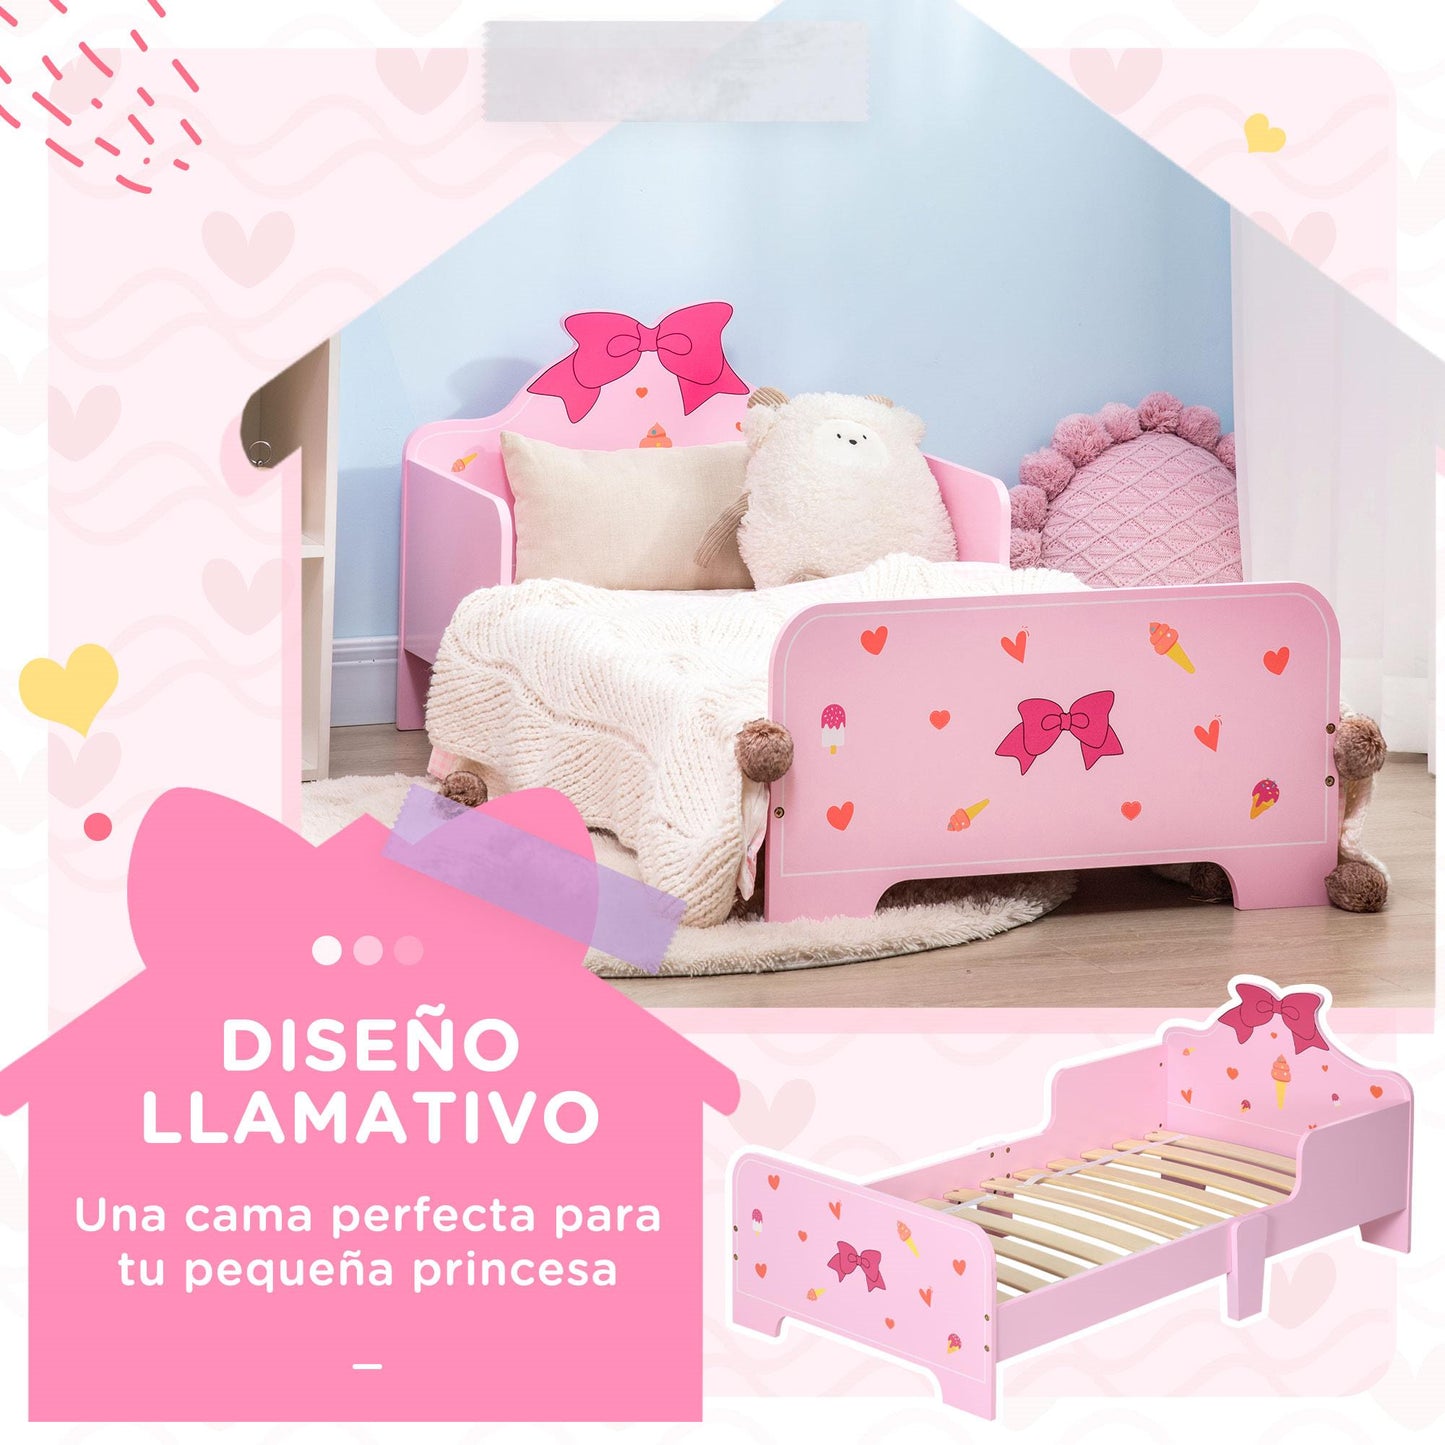 ZONEKIZ Cama Infantil de Madera 143x74x59 cm Cama para Niños de 3-6 Años con Barreras de Protección Carga Máx. 80 kg Mueble de Dormitorio Moderno Rosa